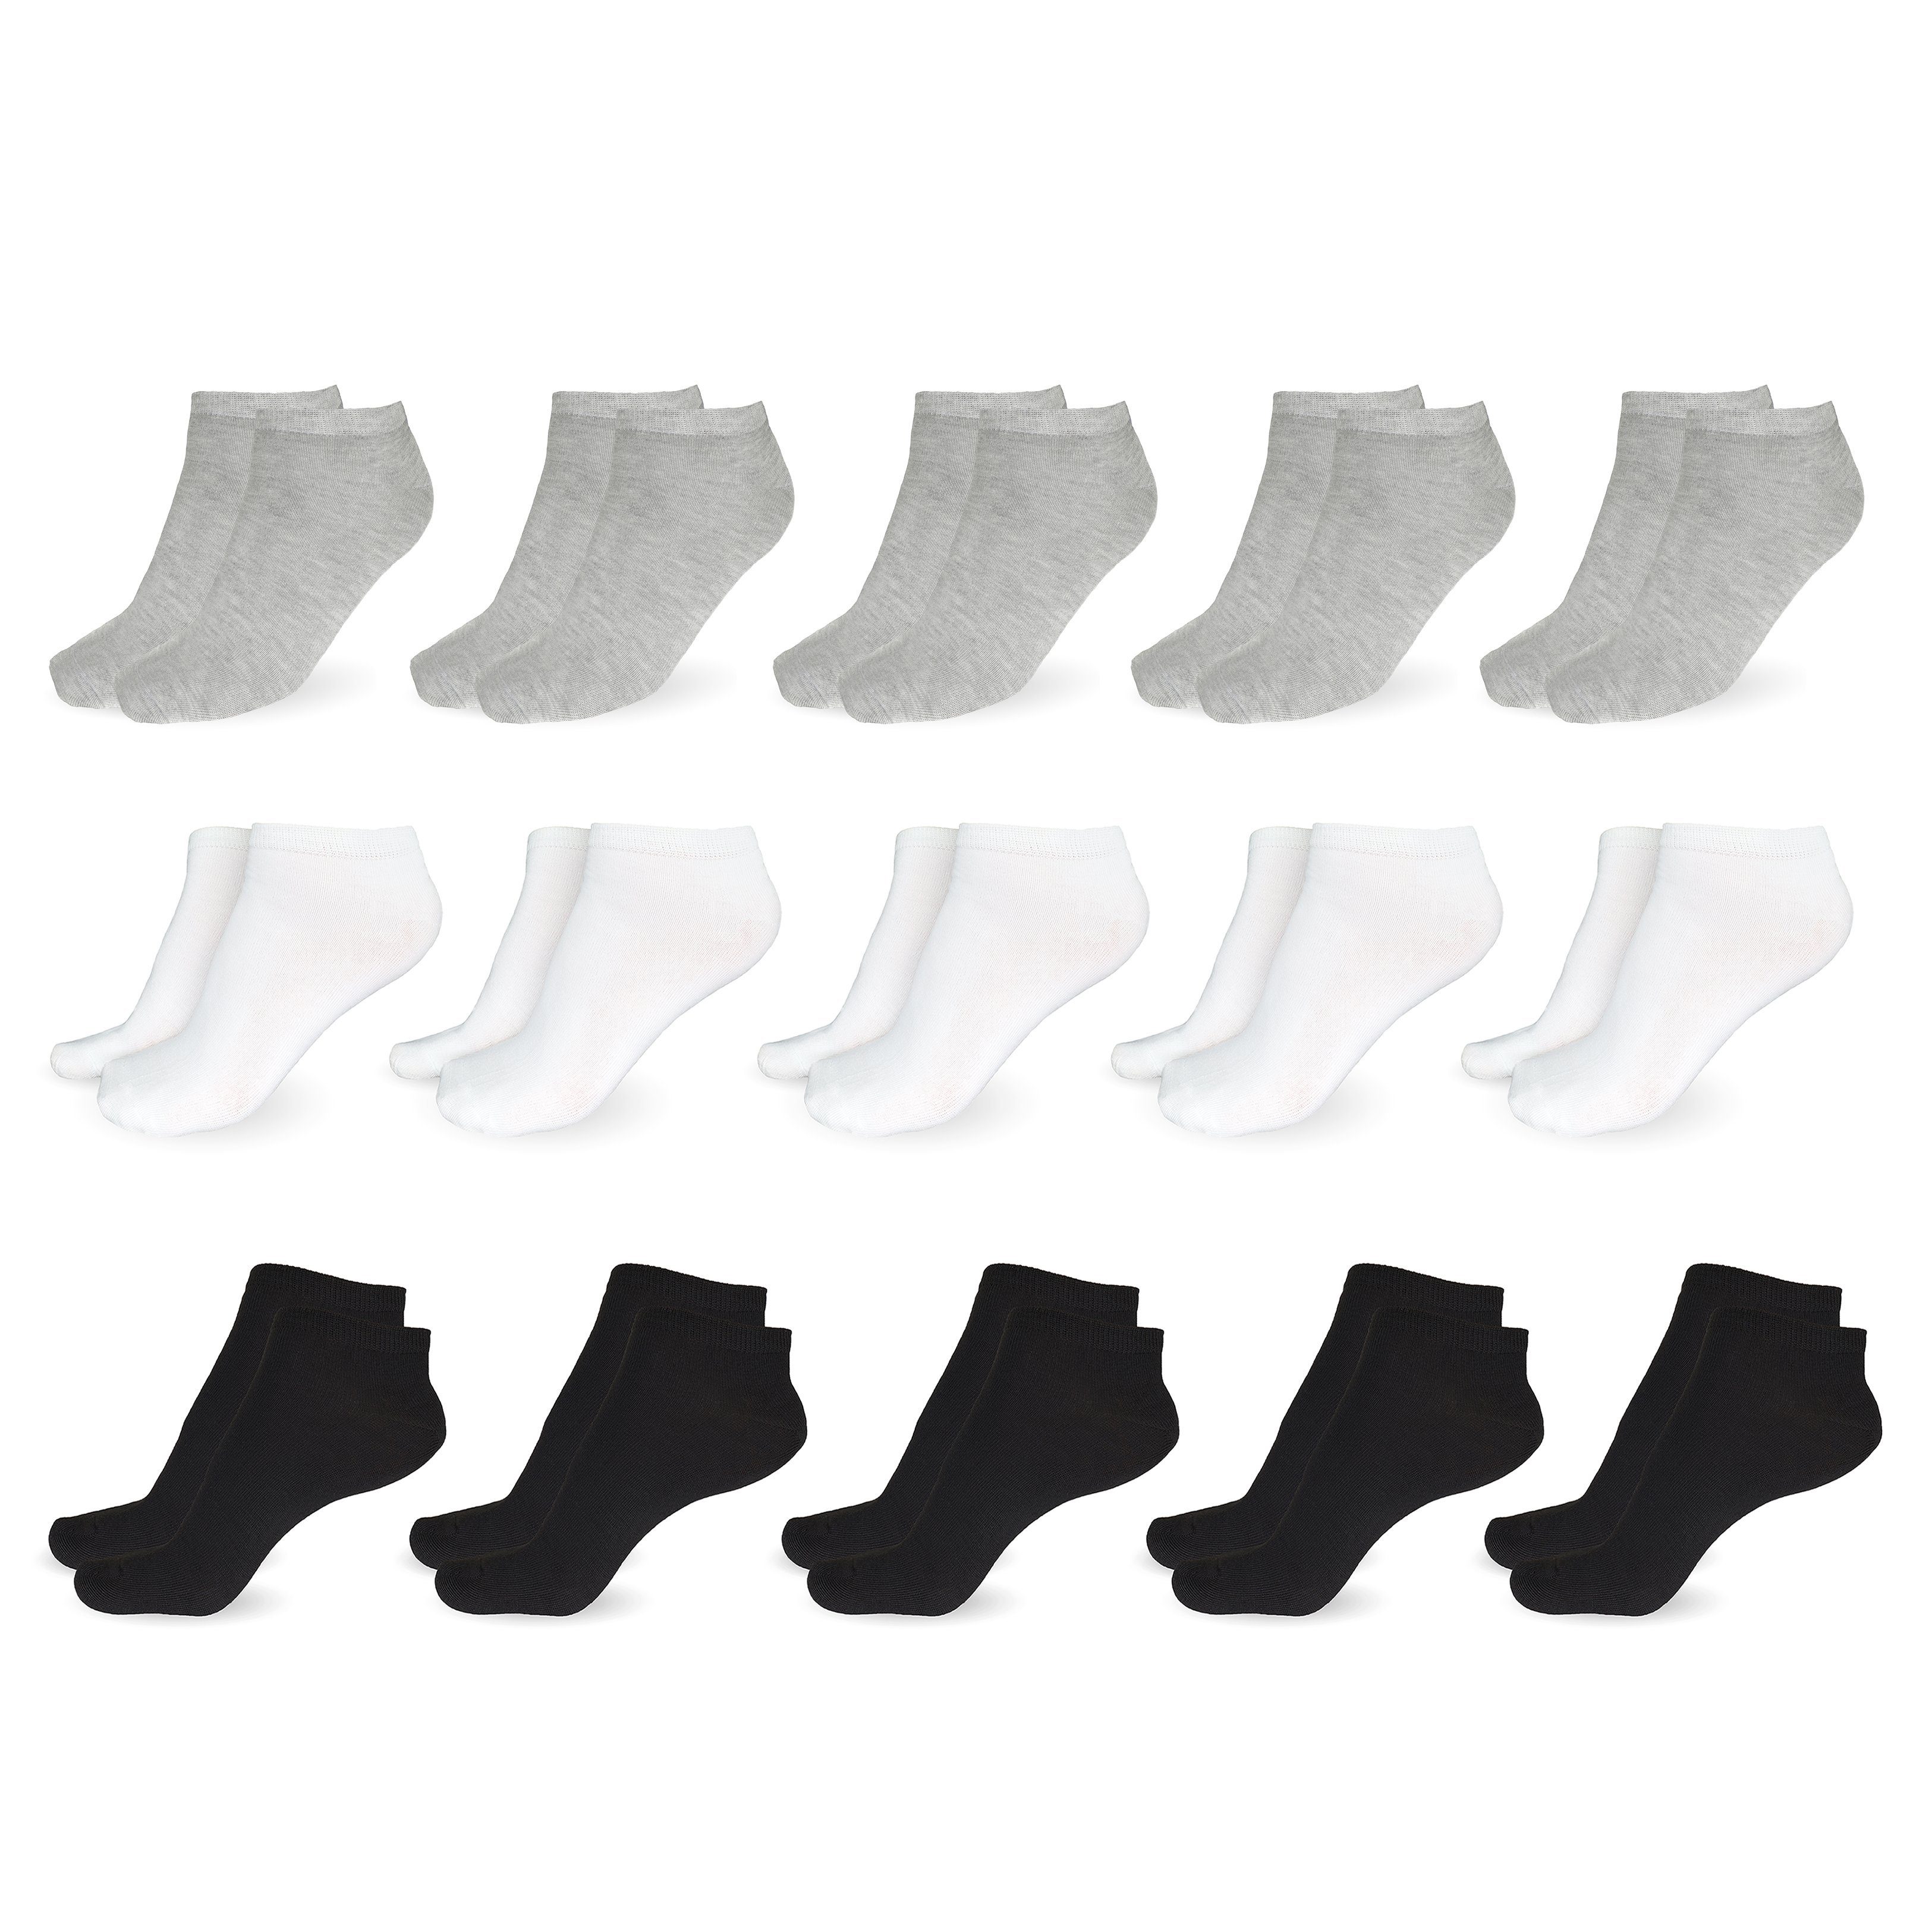 SO.I Freizeitsocken Sneaker Socken Damen & Herren aus Baumwolle (Größen 35-46, 5-20 Paar) atmungsaktive Unisex Socken 10x Grau + 10x Weiß + 10x Schwarz